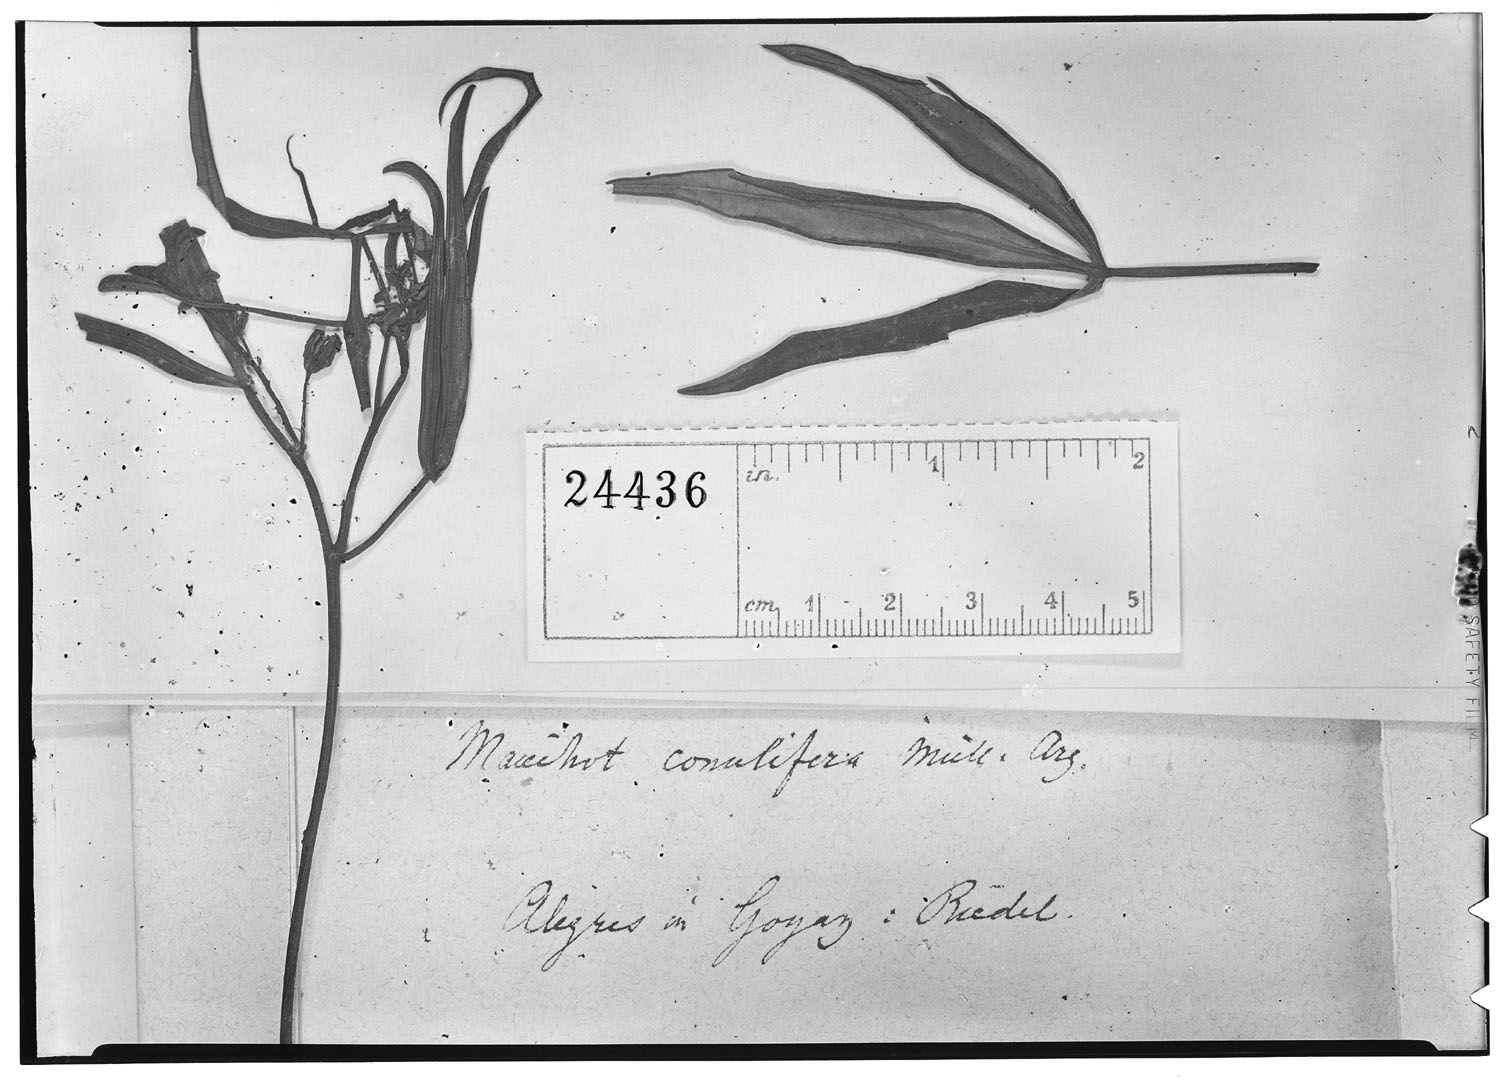 Manihot pentaphylla image